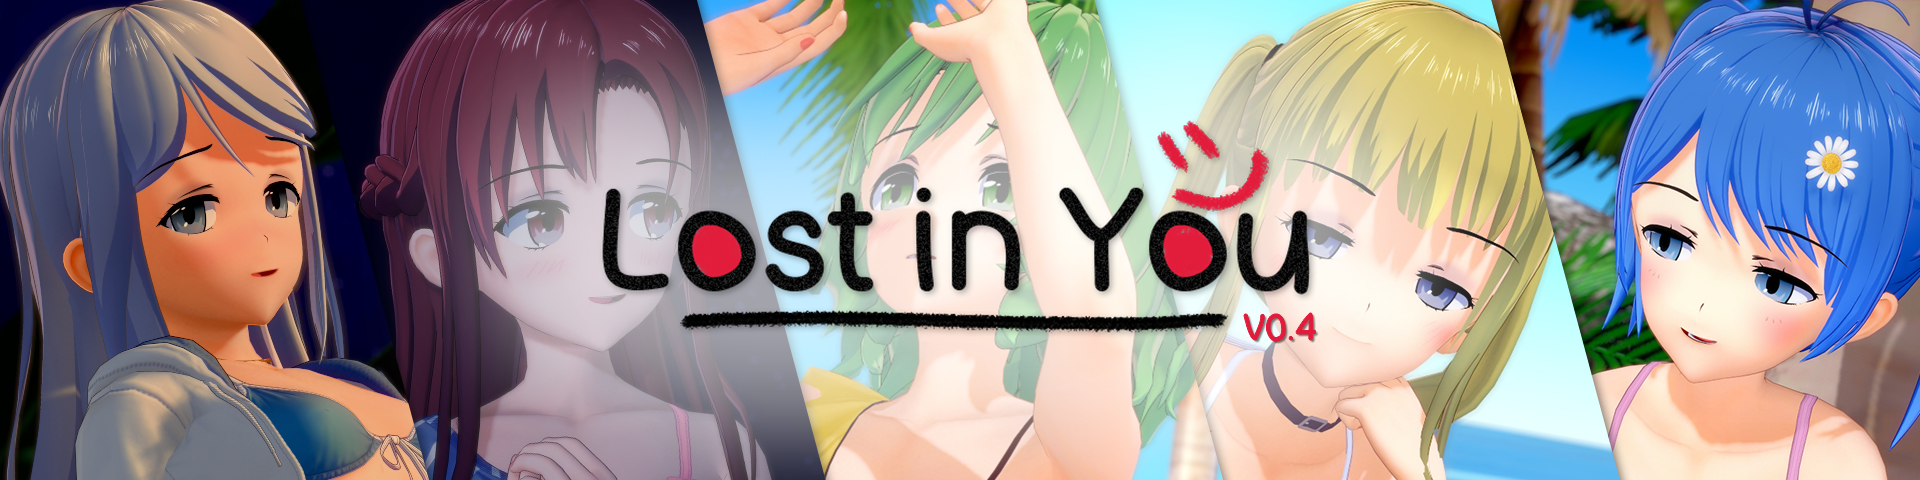 Lost in You (v0.7.2)